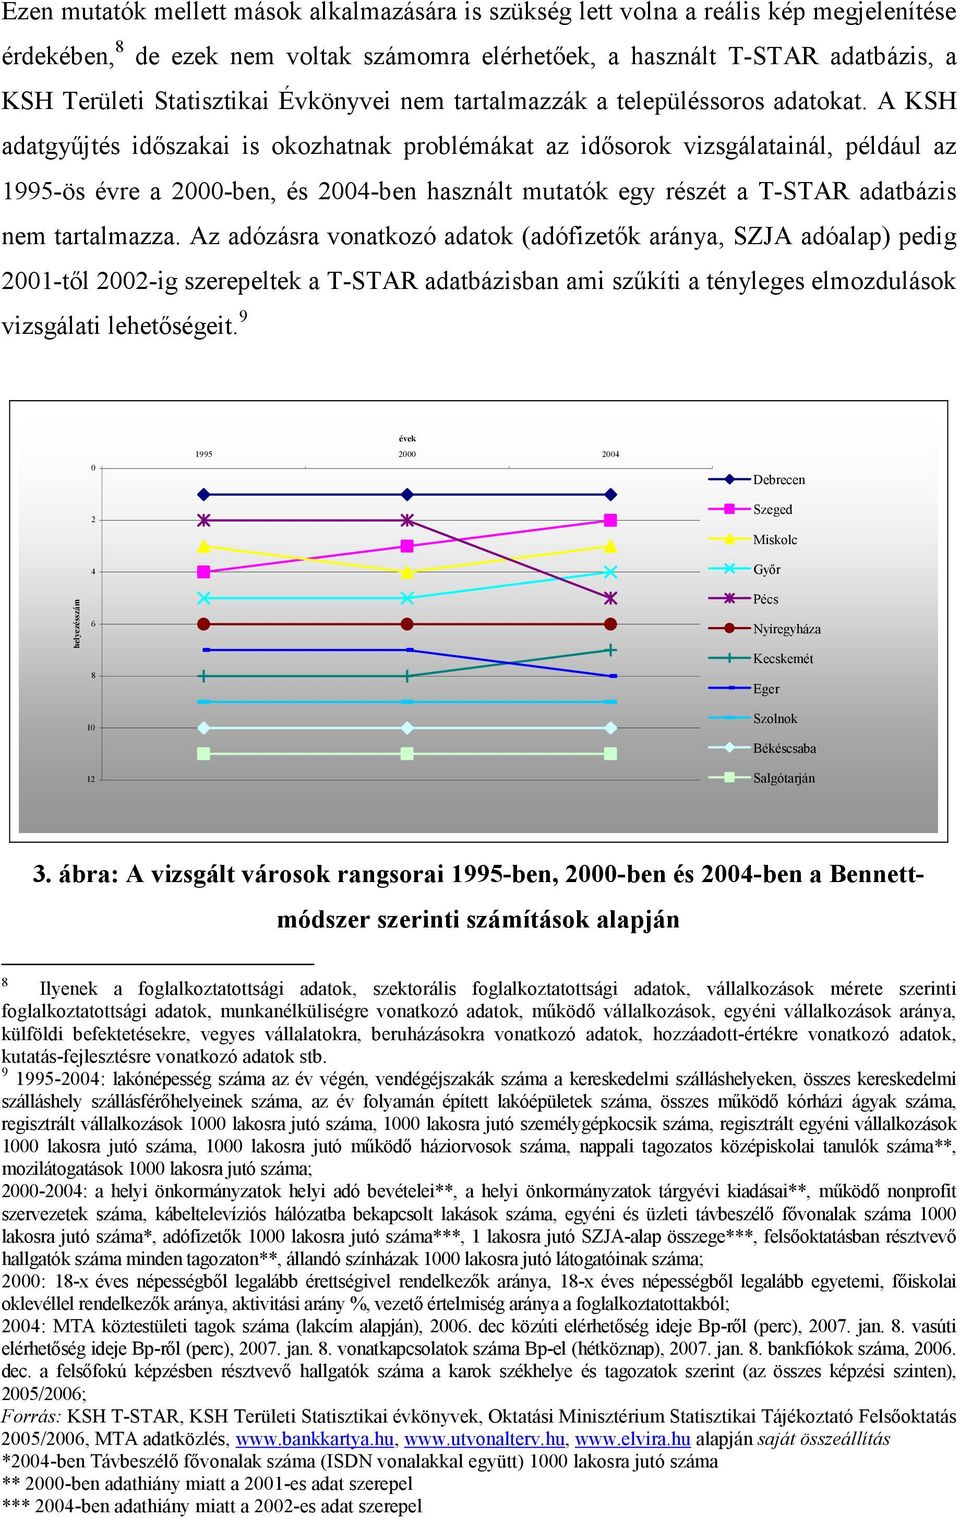 A KSH adatgyőjtés idıszakai is okozhatnak problémákat az idısorok vizsgálatainál, például az 1995-ös évre a 2000-ben, és 2004-ben használt mutatók egy részét a T-STAR adatbázis nem tartalmazza.